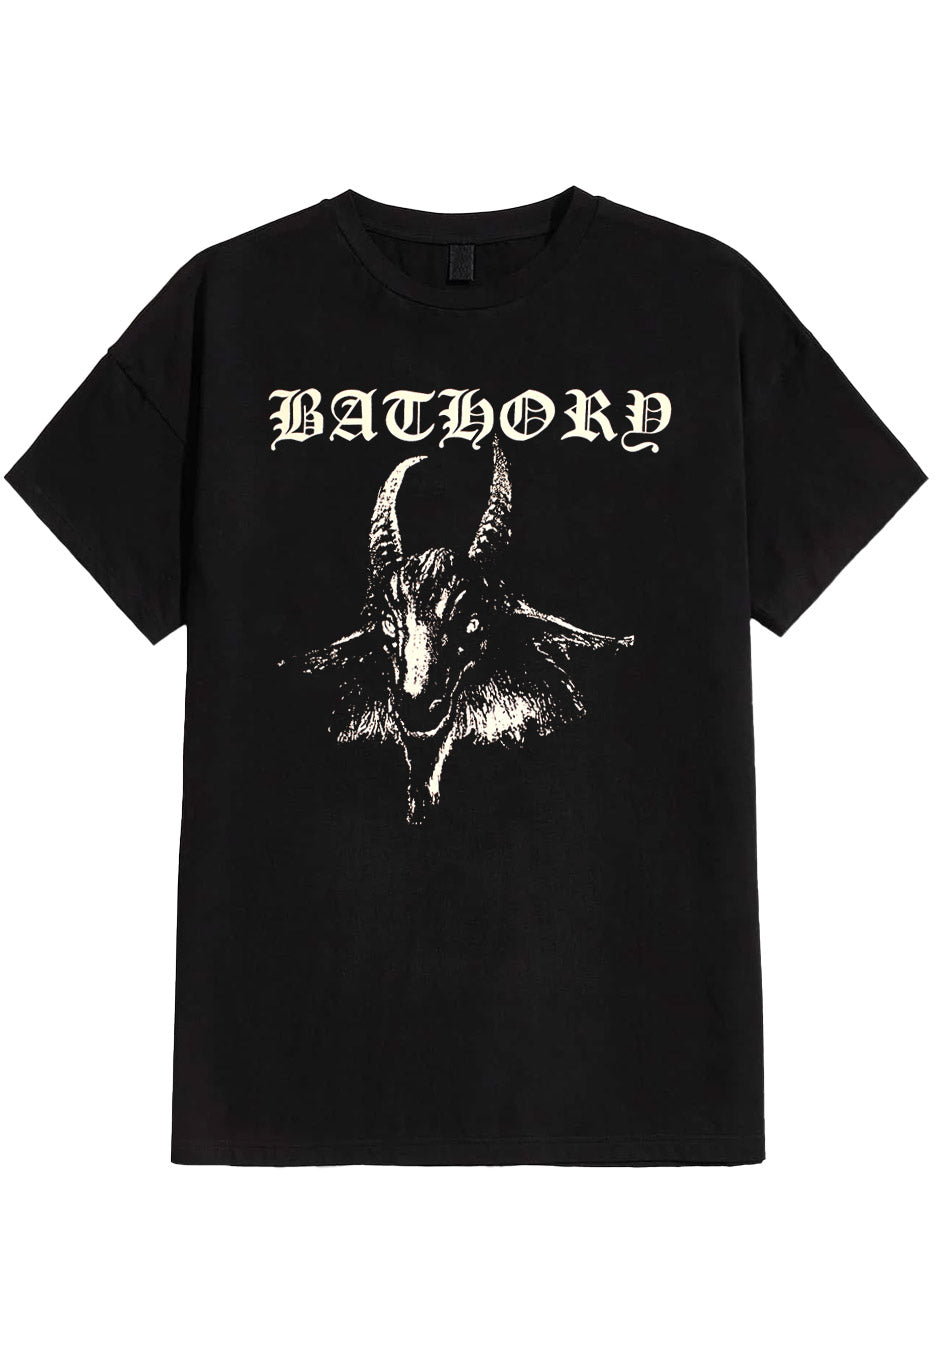 Bathory - Goat - T-Shirt